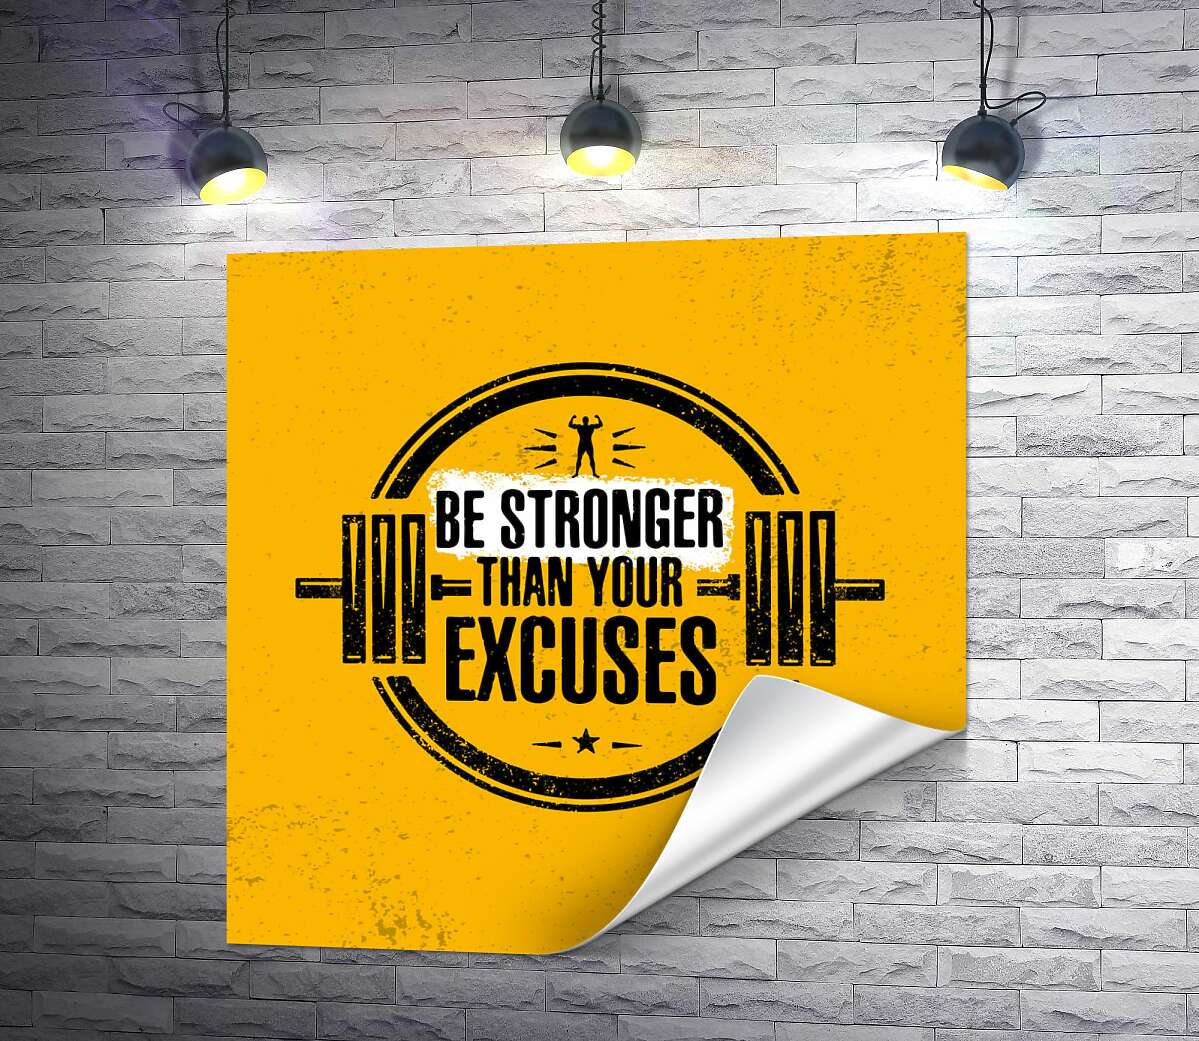 печать Силуэт гантели между надписью "be stronger than your excuses"